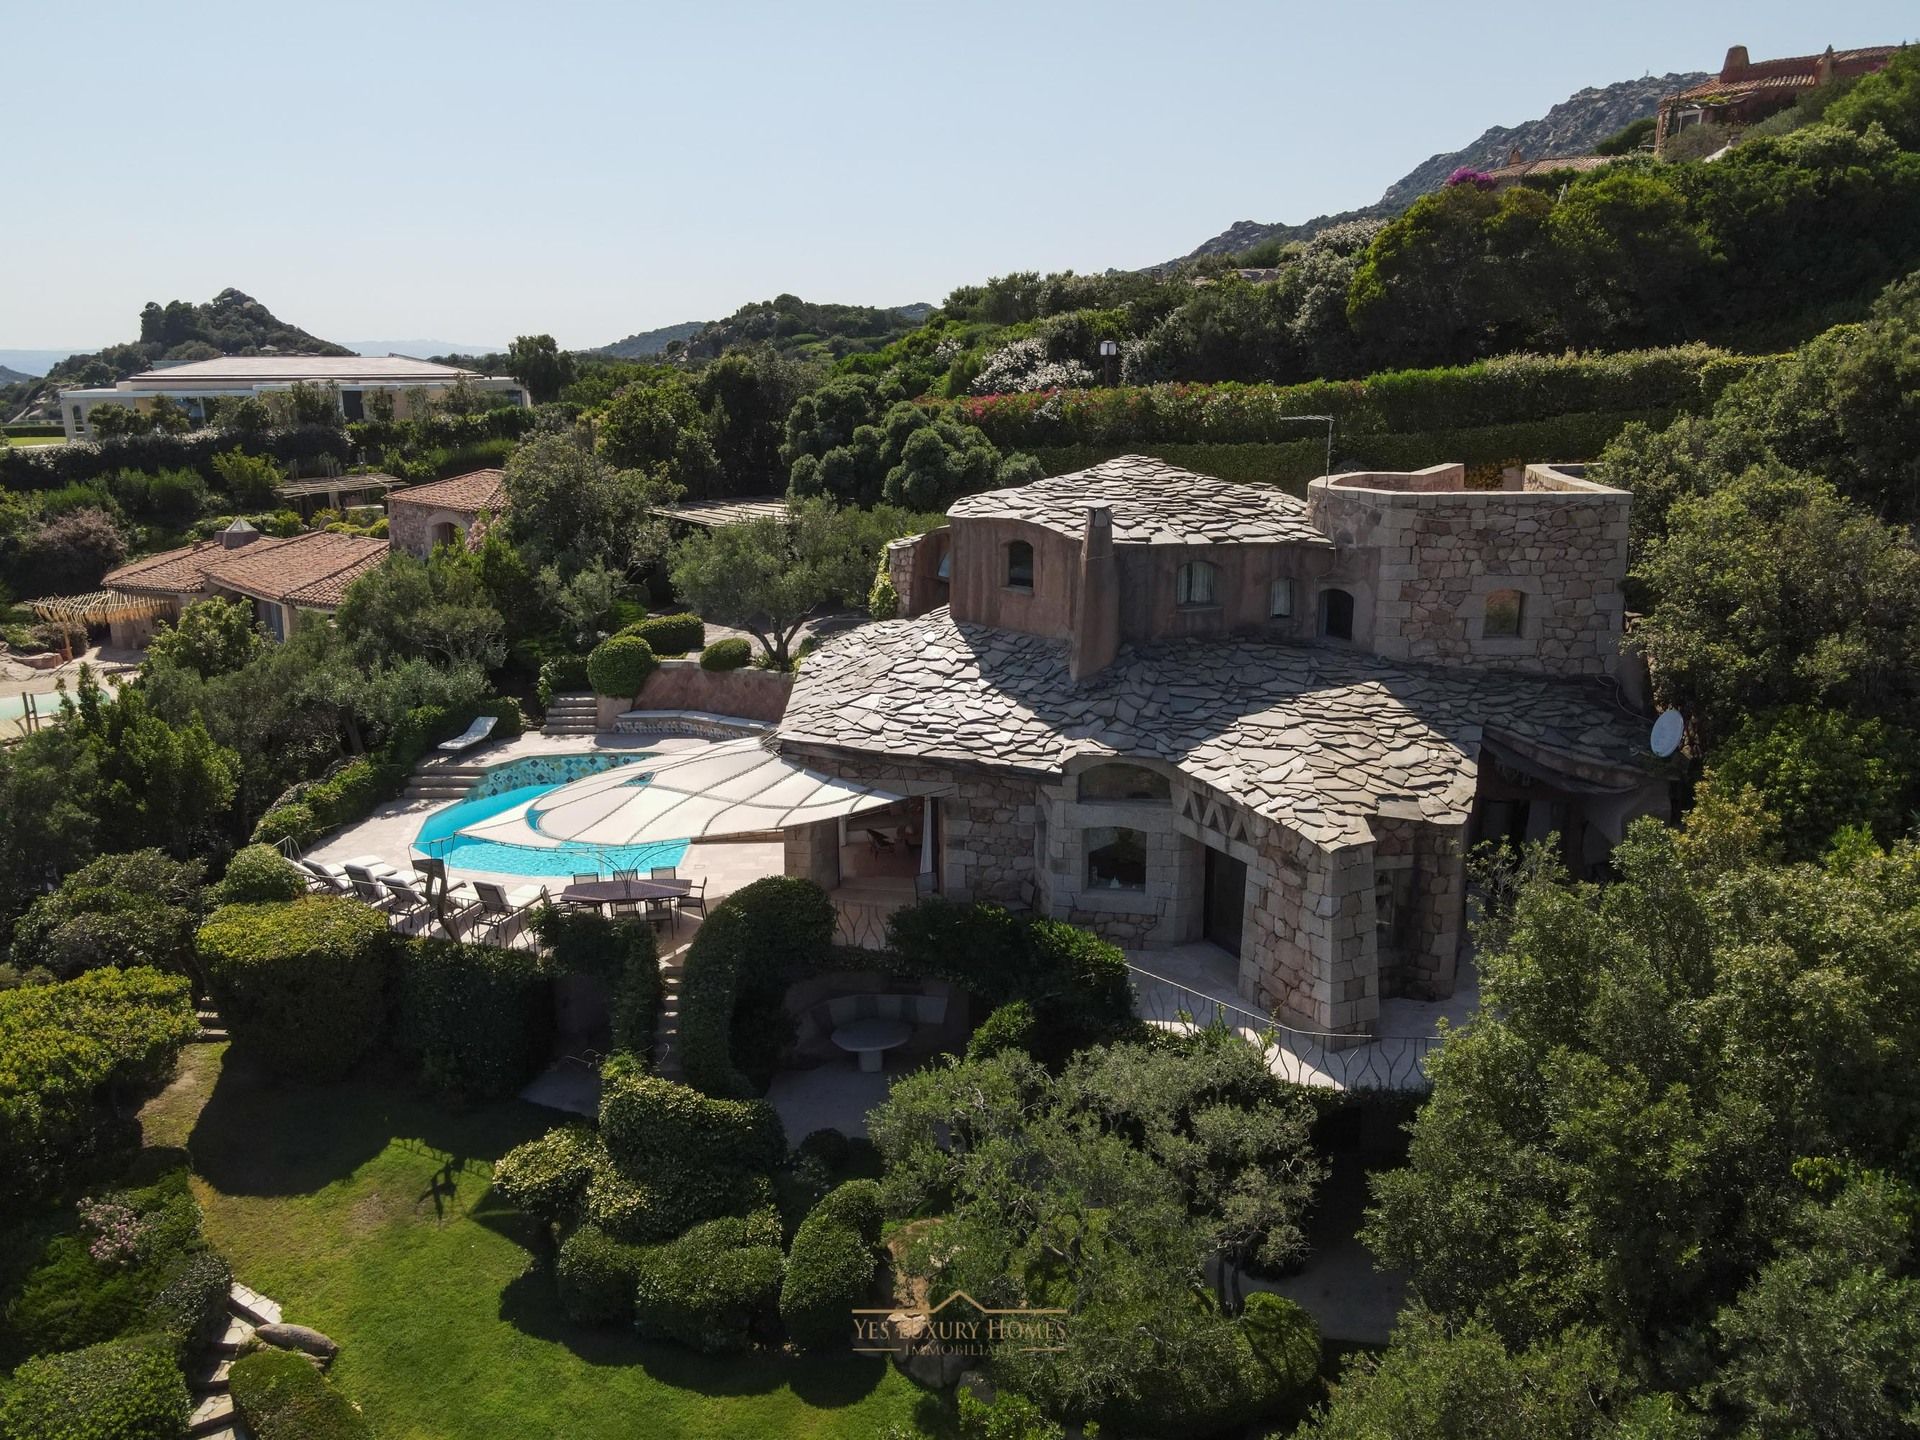 For sale villa by the sea Arzachena Sardegna